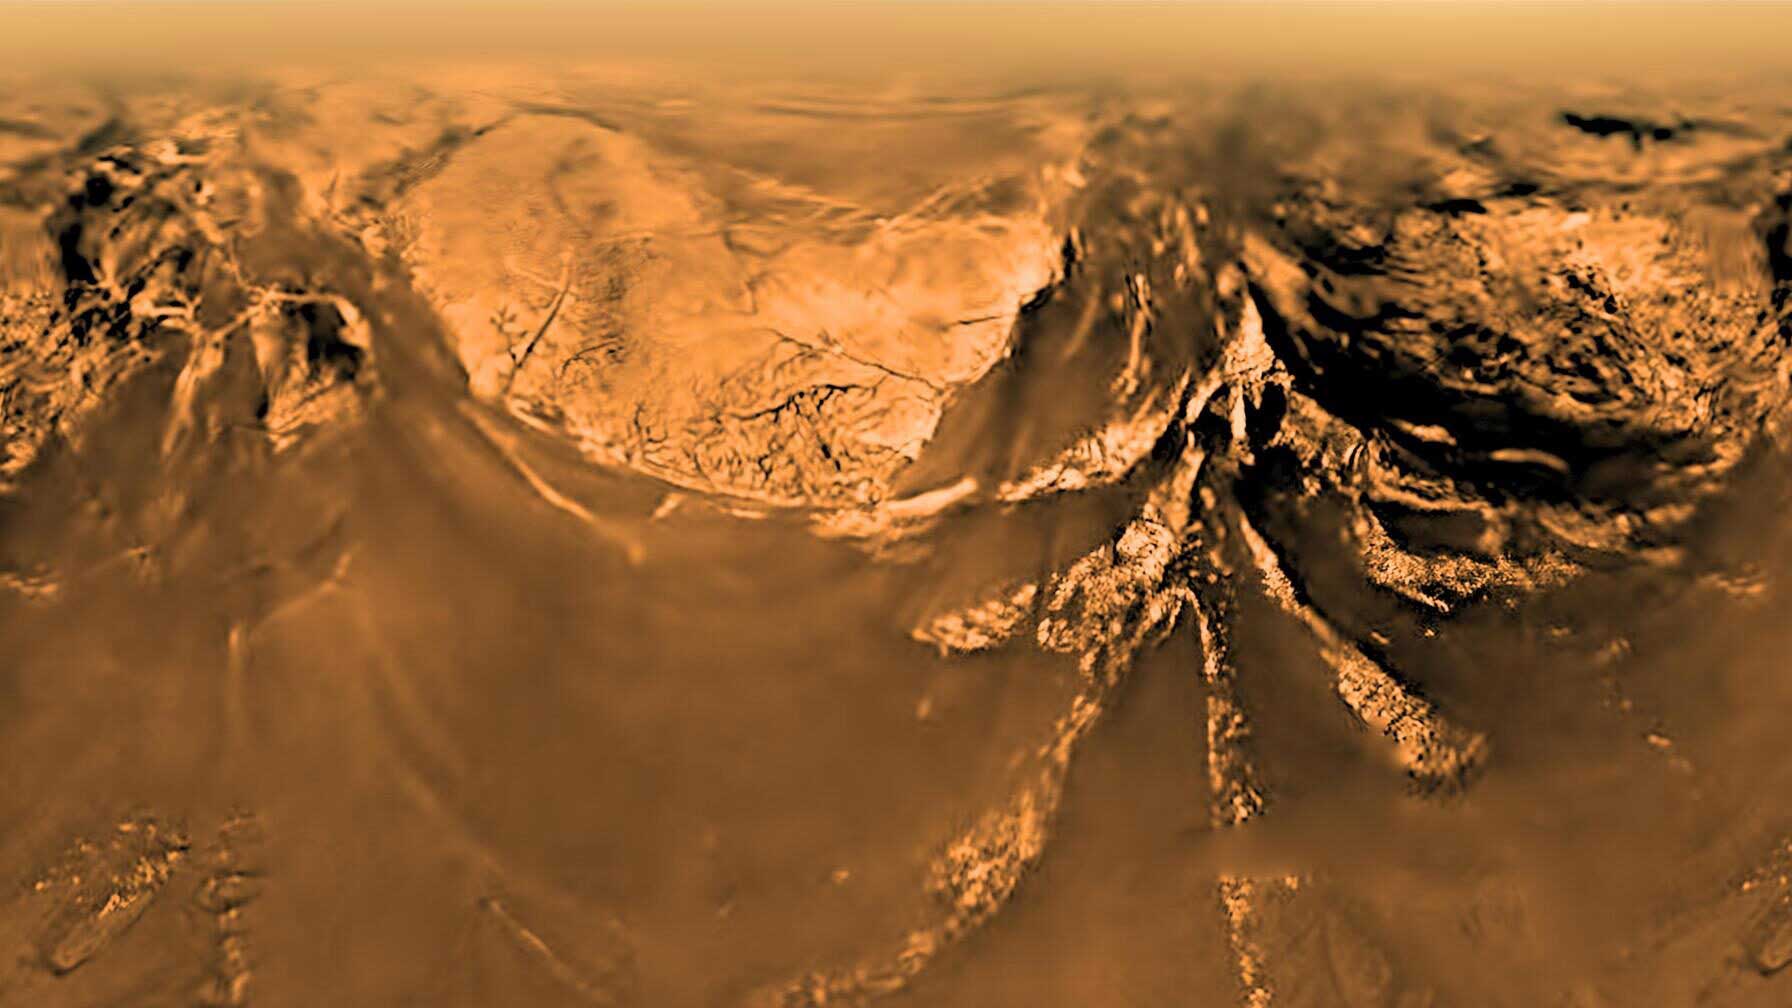 Saturn's moon Titan